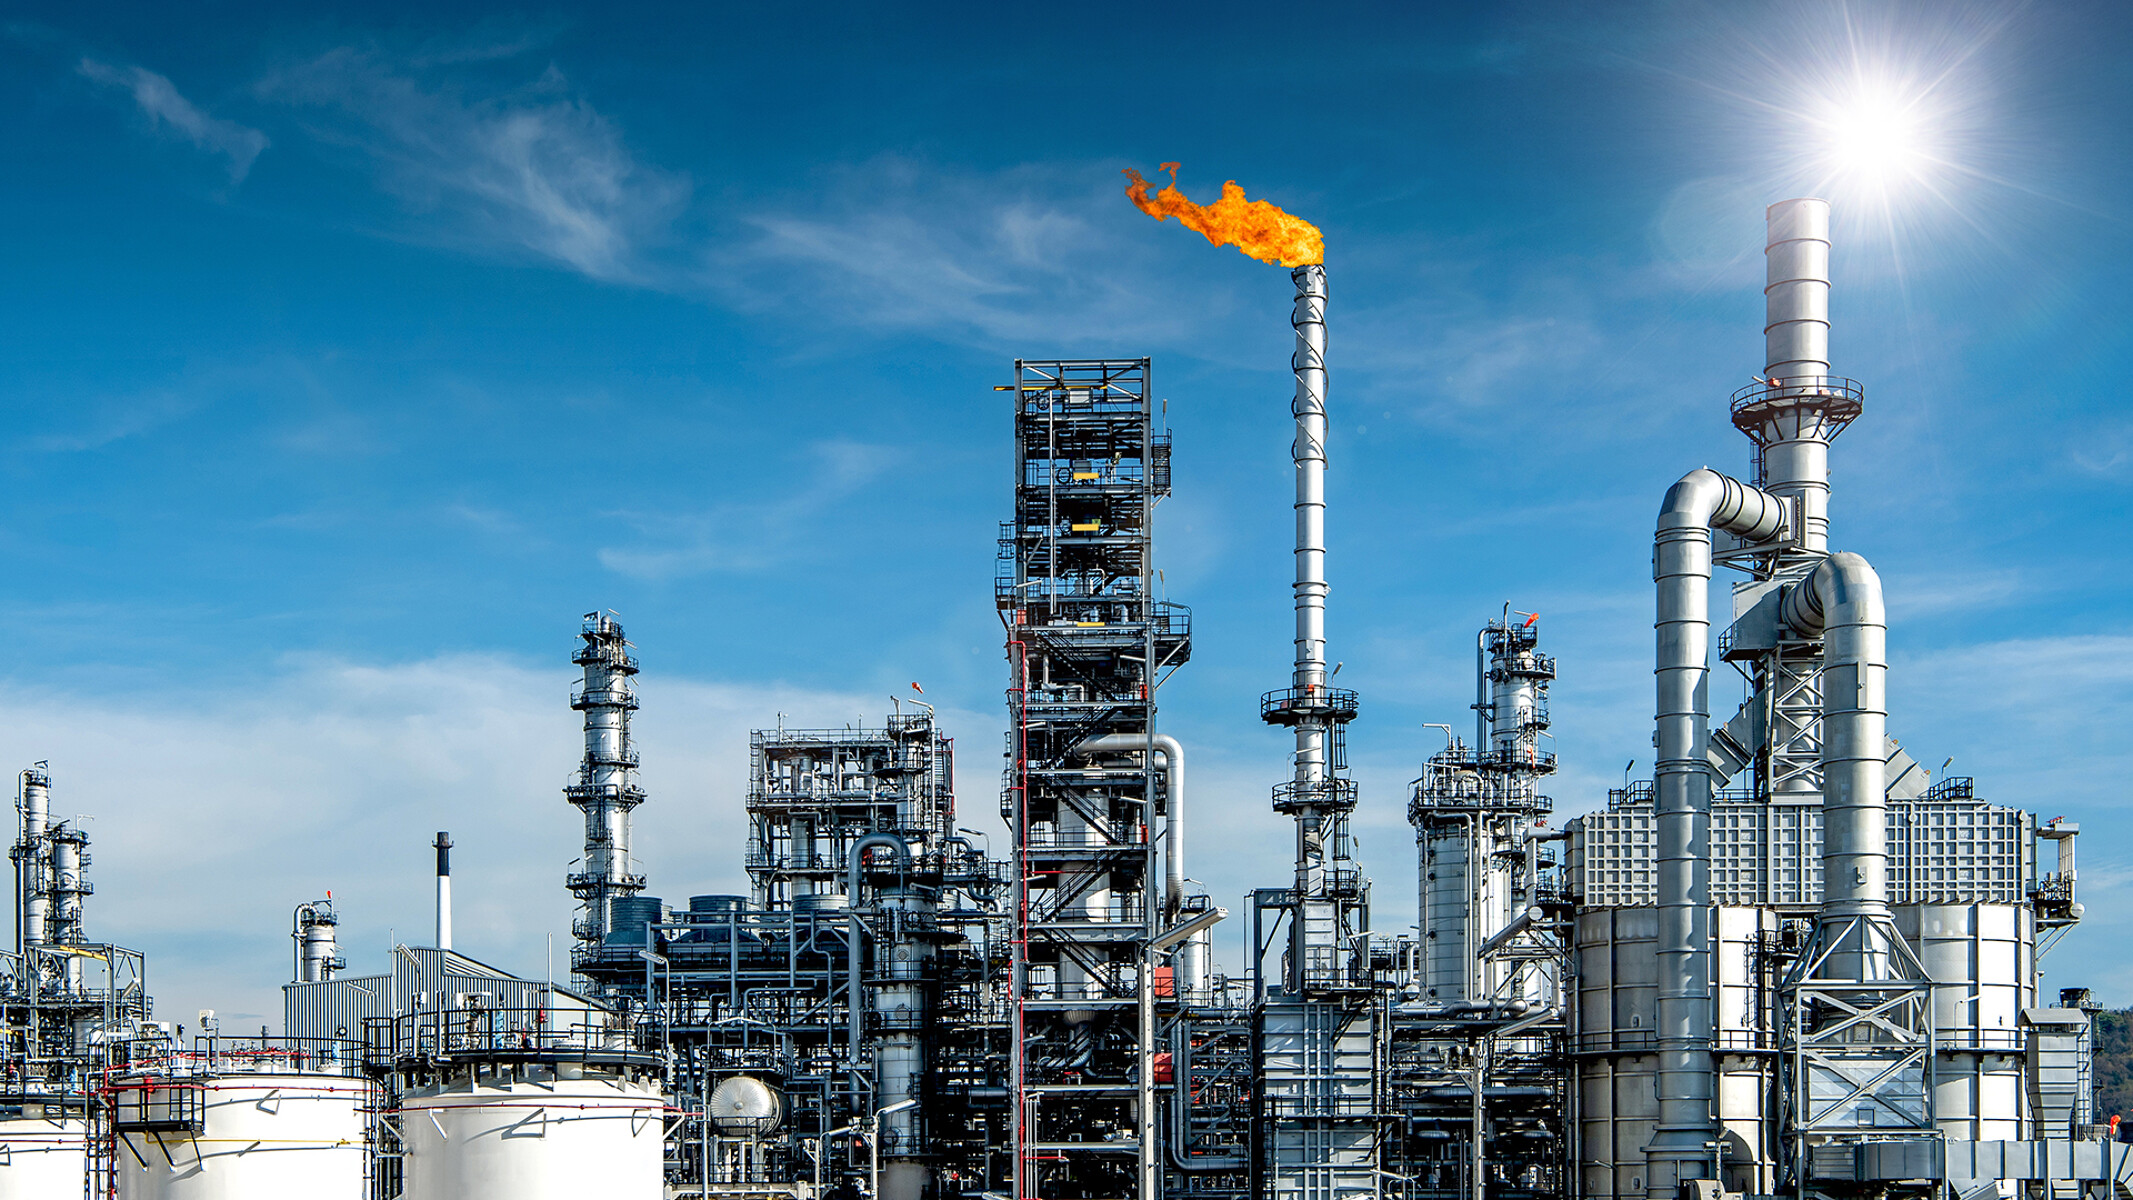 Gran complejo de refinado de petróleo con una llama de combustión naranja en el centro que contrasta con un brillante cielo azul